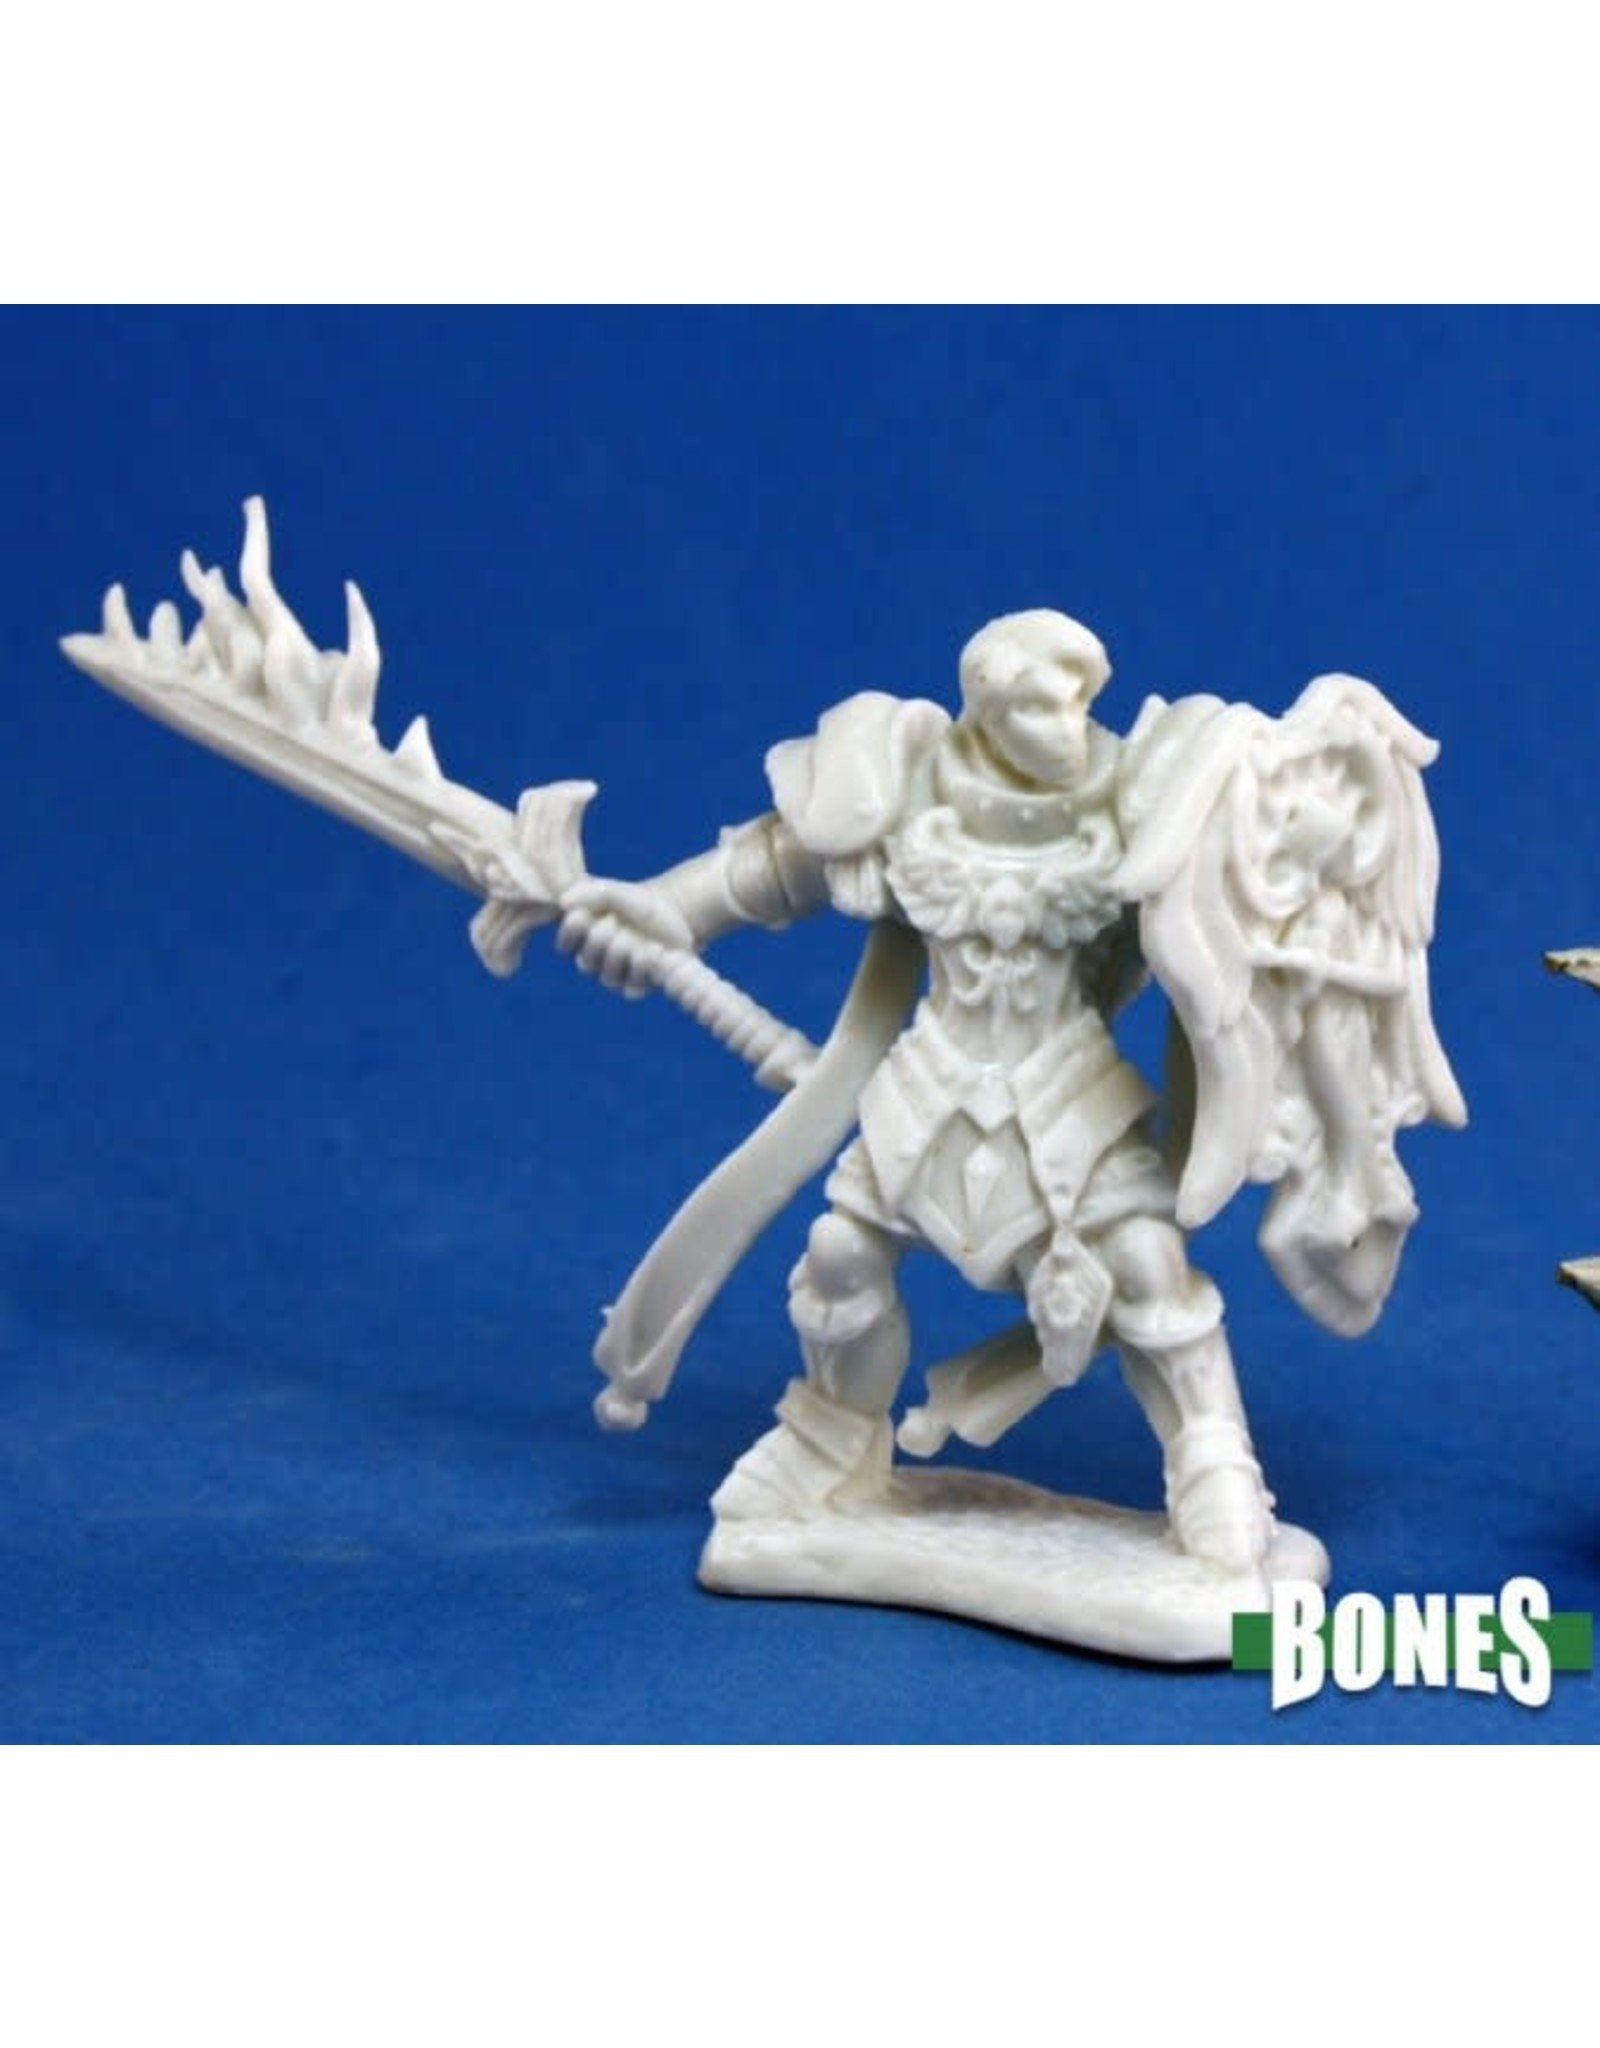 Reaper Miniatures Bones: Almaran the Gold, Paladin